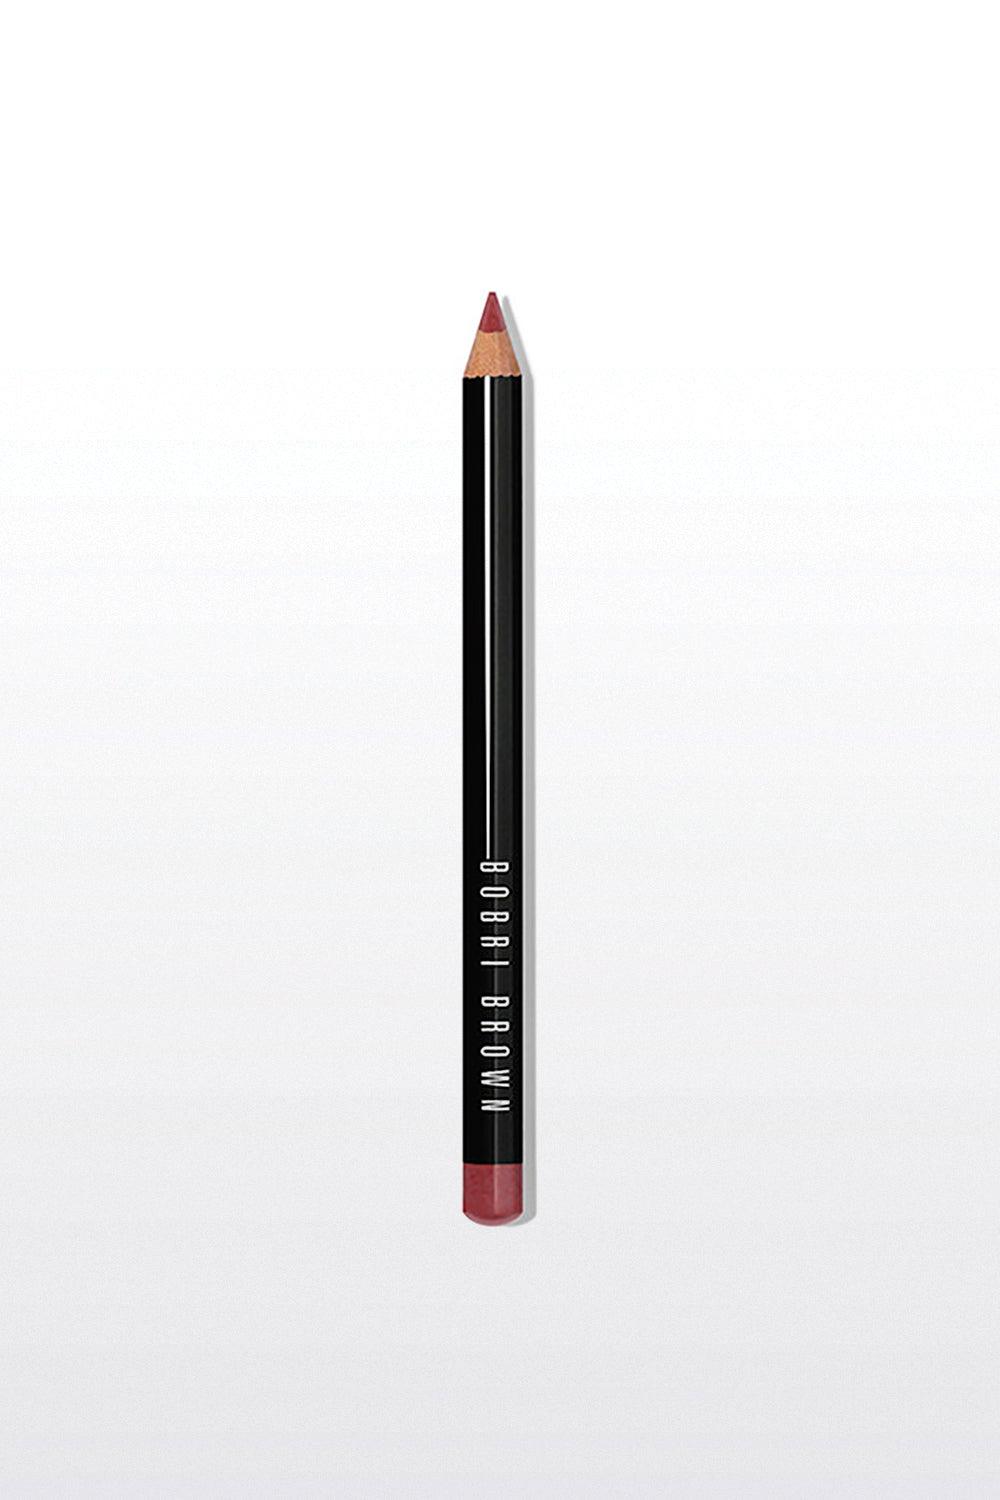 BOBBI BROWN - עפרון שפתיים בעל פורמולה עמידה - MASHBIR//365